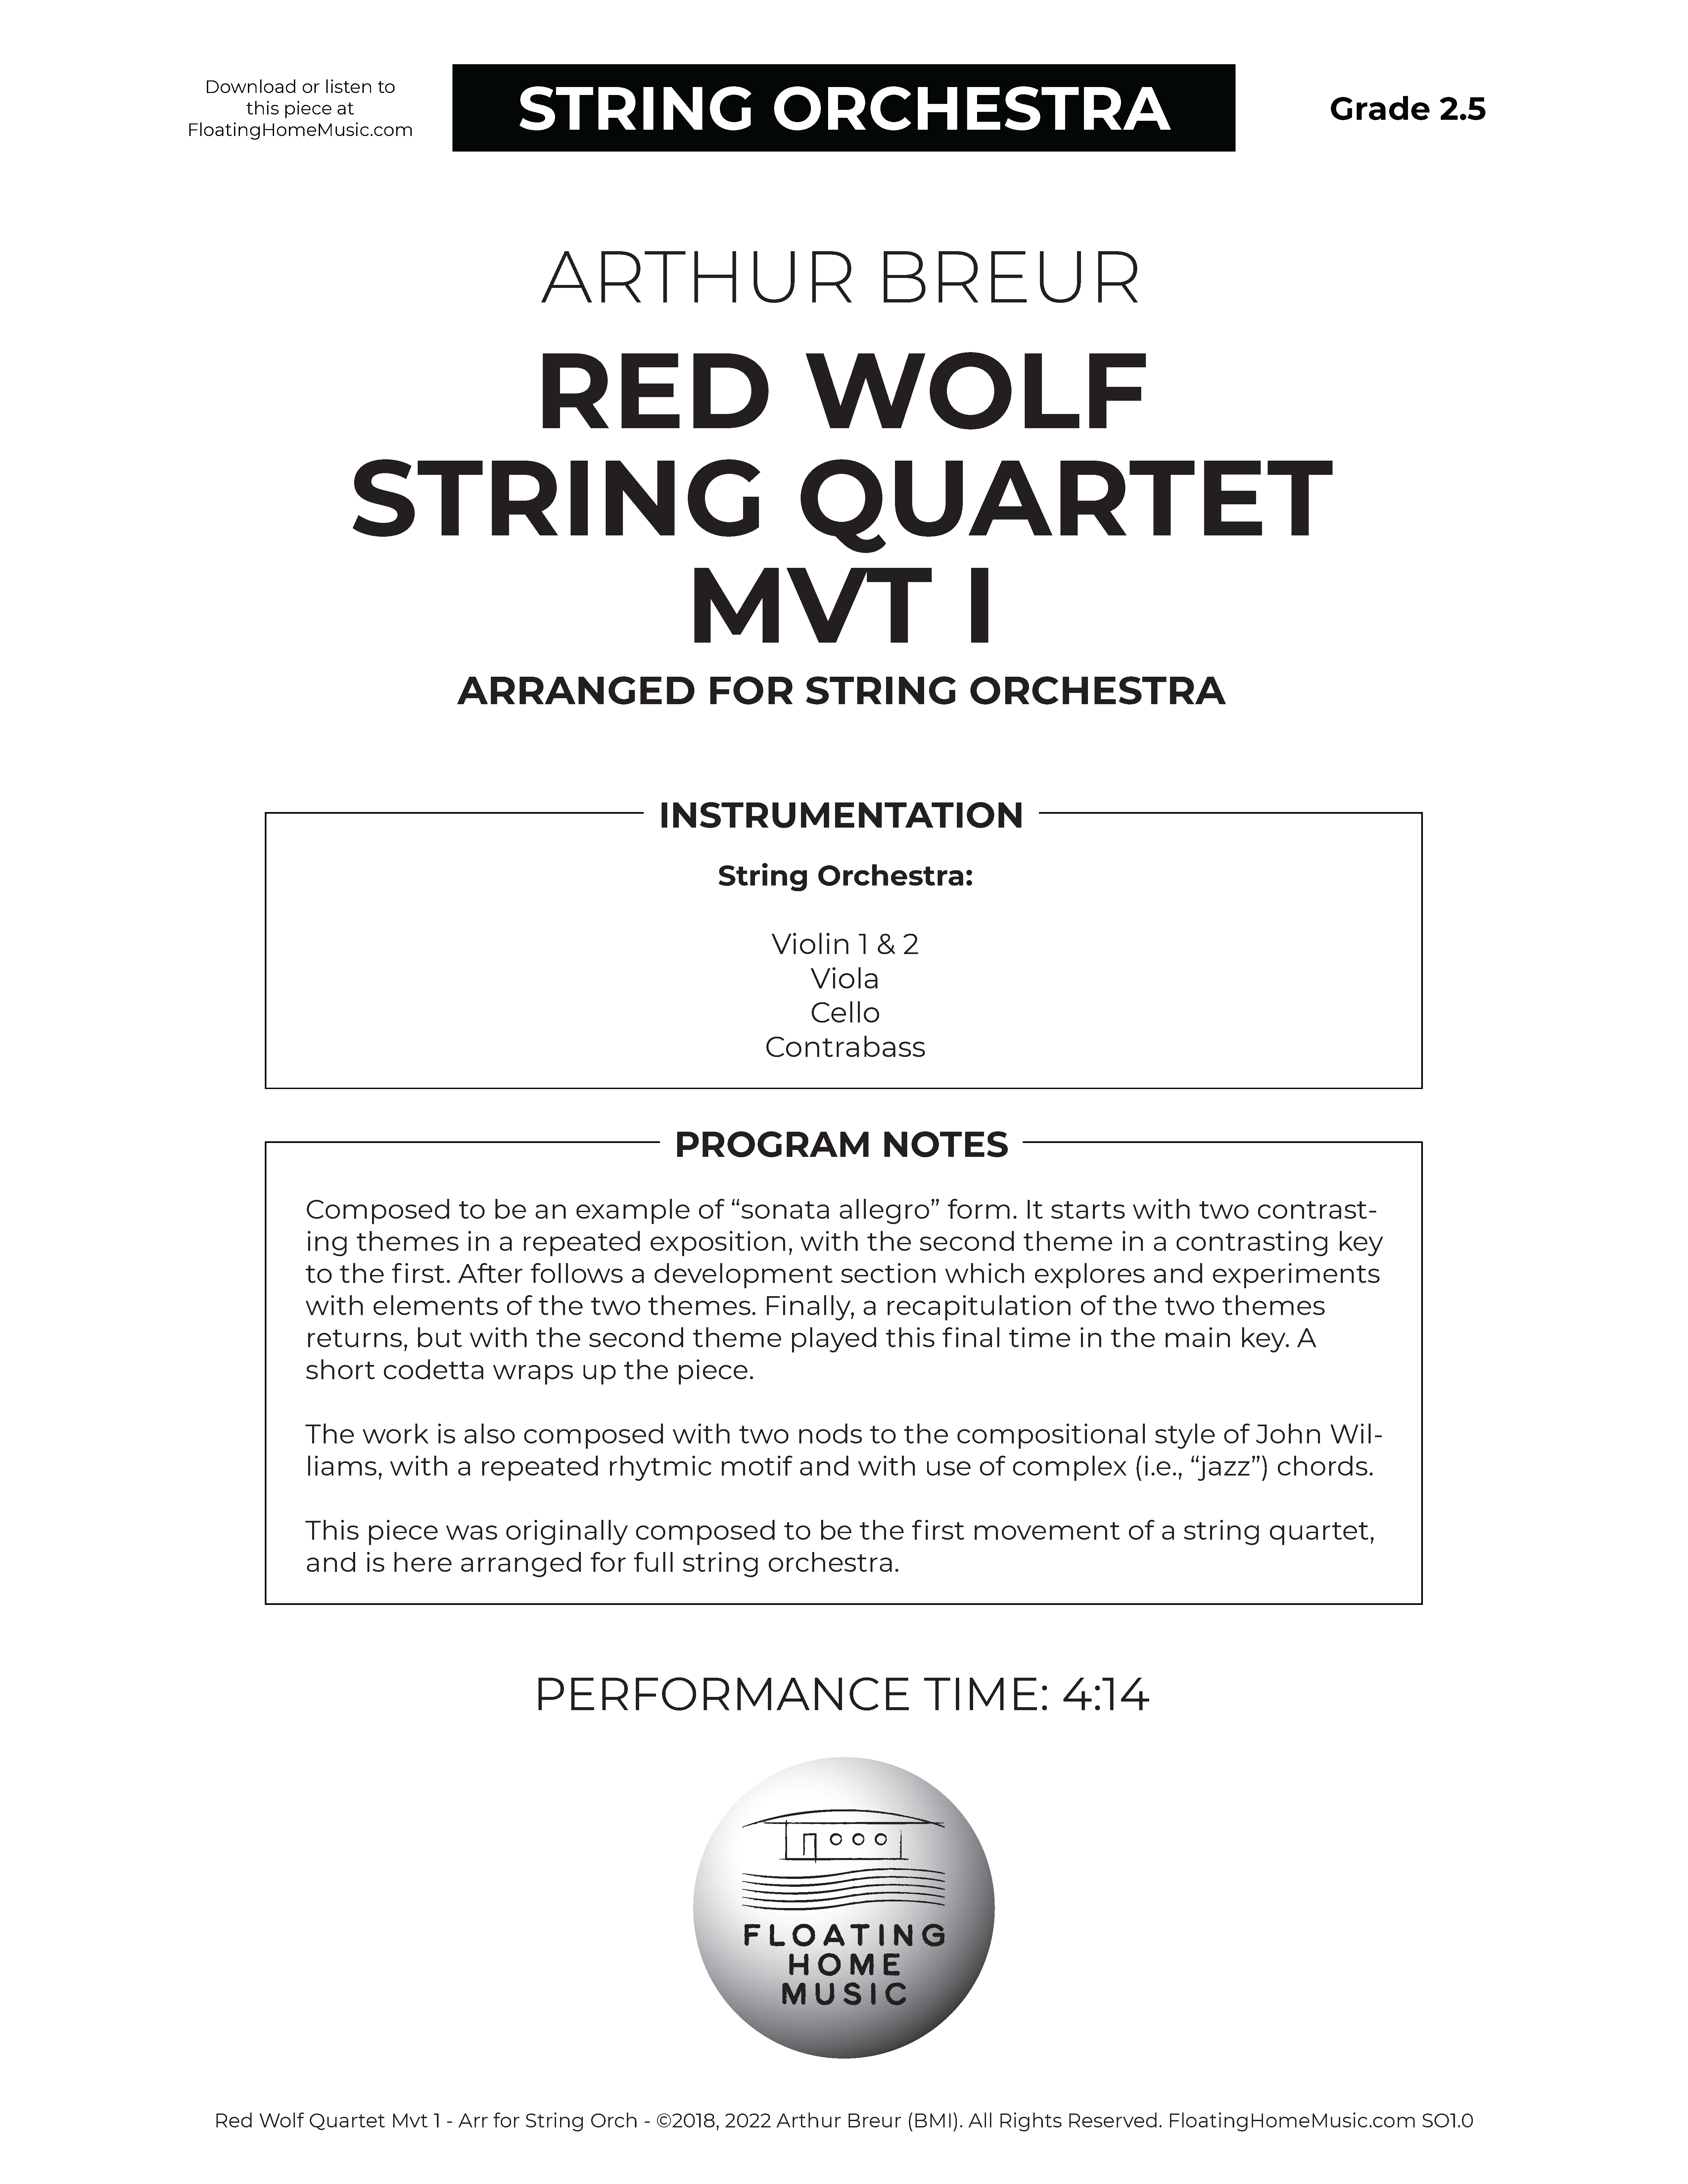 Red Wolf Quartet, Mvt I, Arr. for String Orchestra